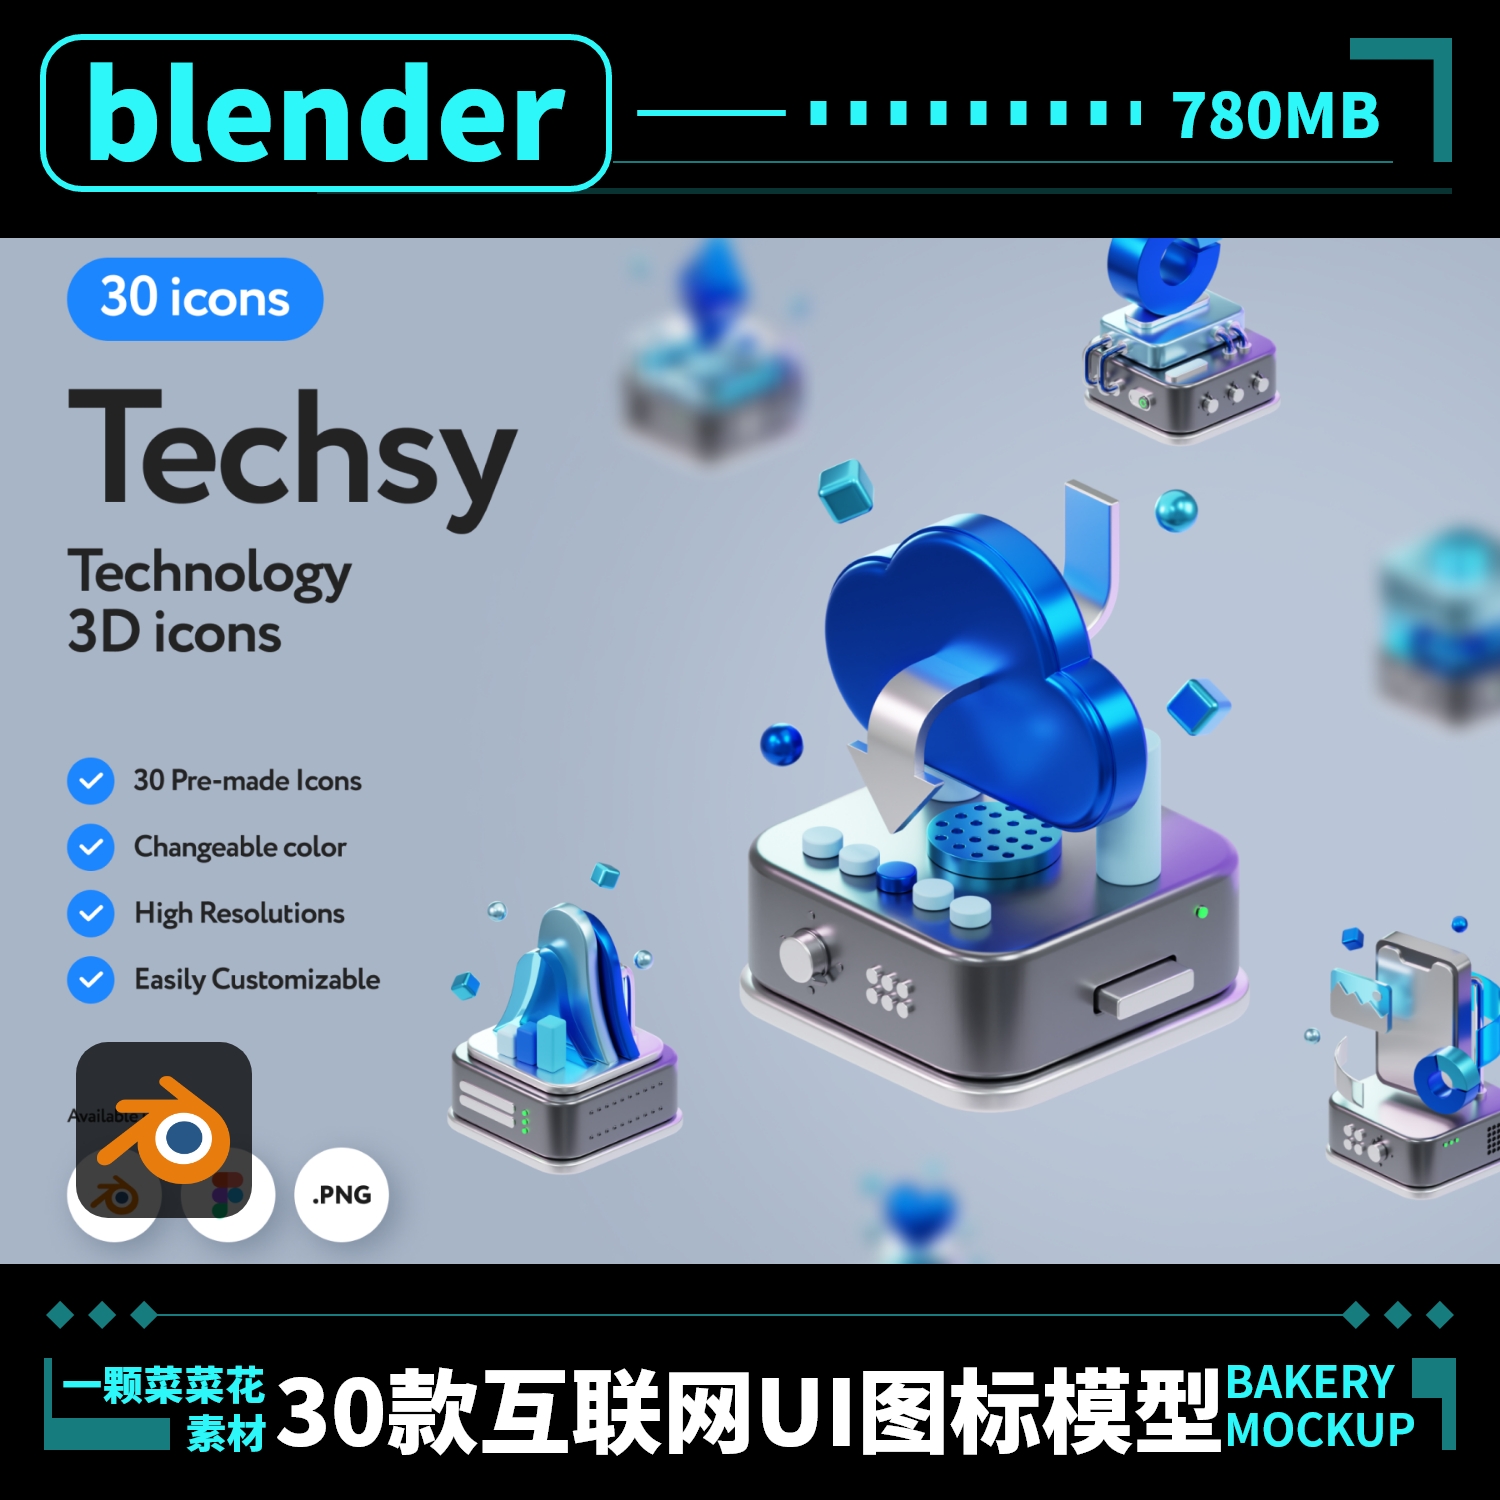 blender B端UI互联网科技玻璃材质B端3D立体图标模型设计素材A151